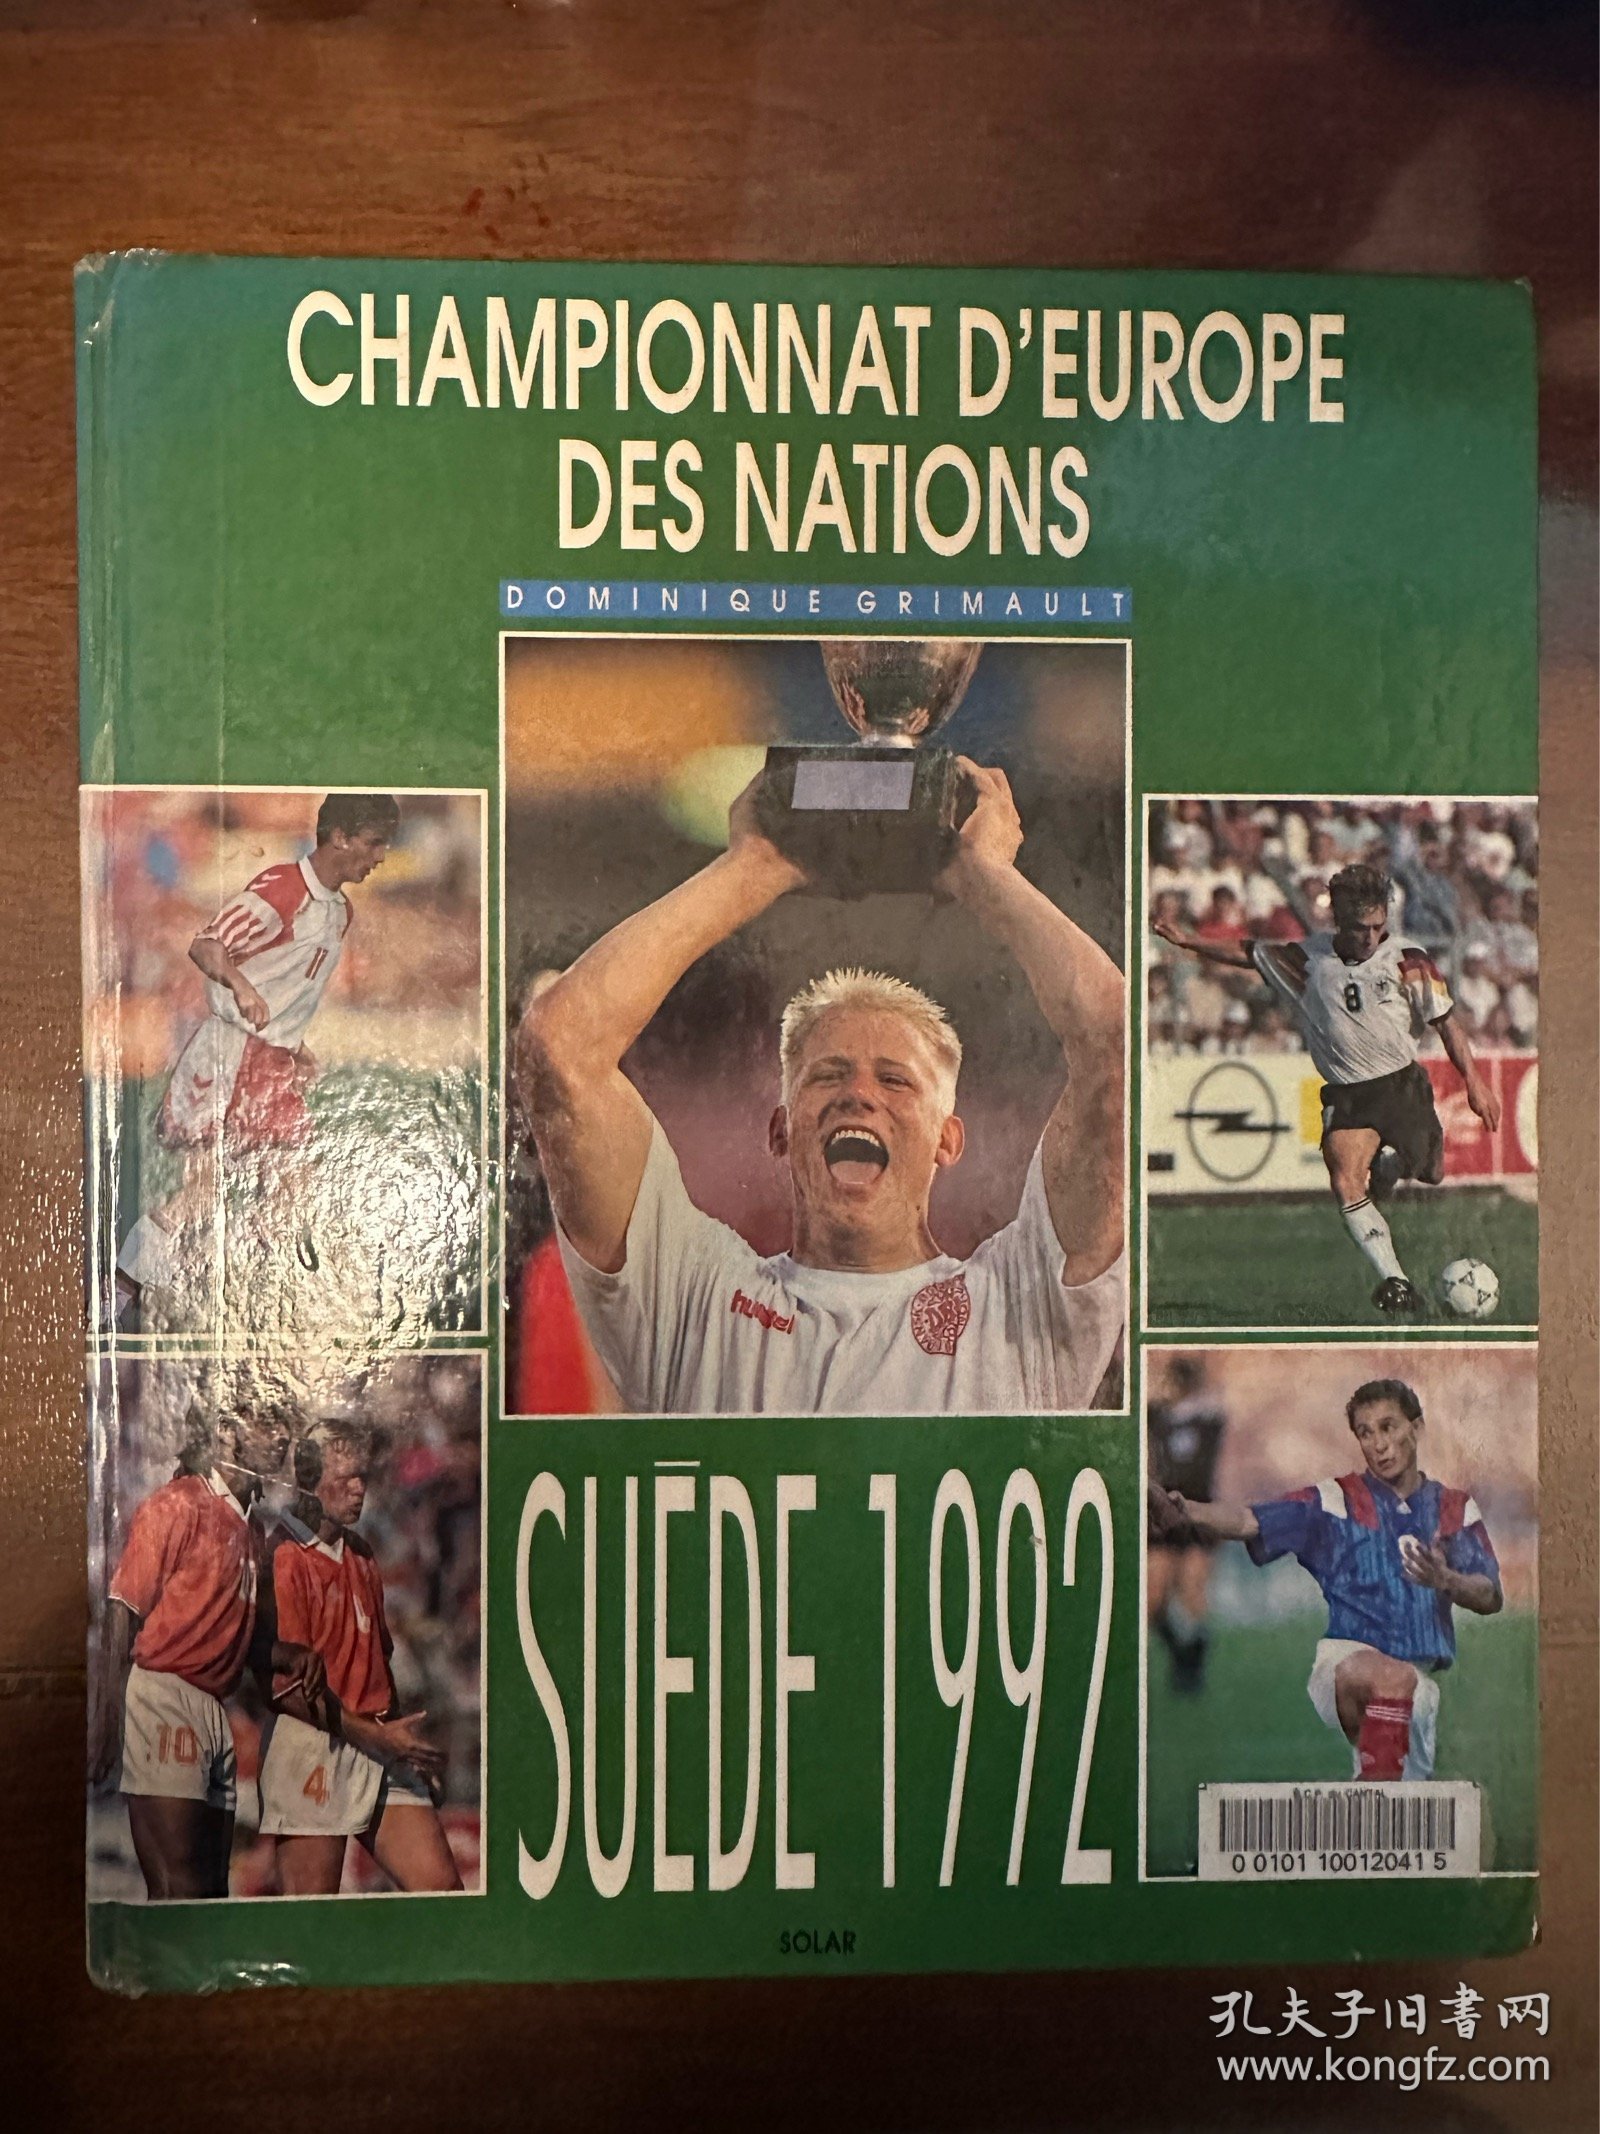 1992欧洲杯足球画册 法国solar原版世界杯欧洲杯法文画册 丹麦夺冠euro赛后特刊 包邮